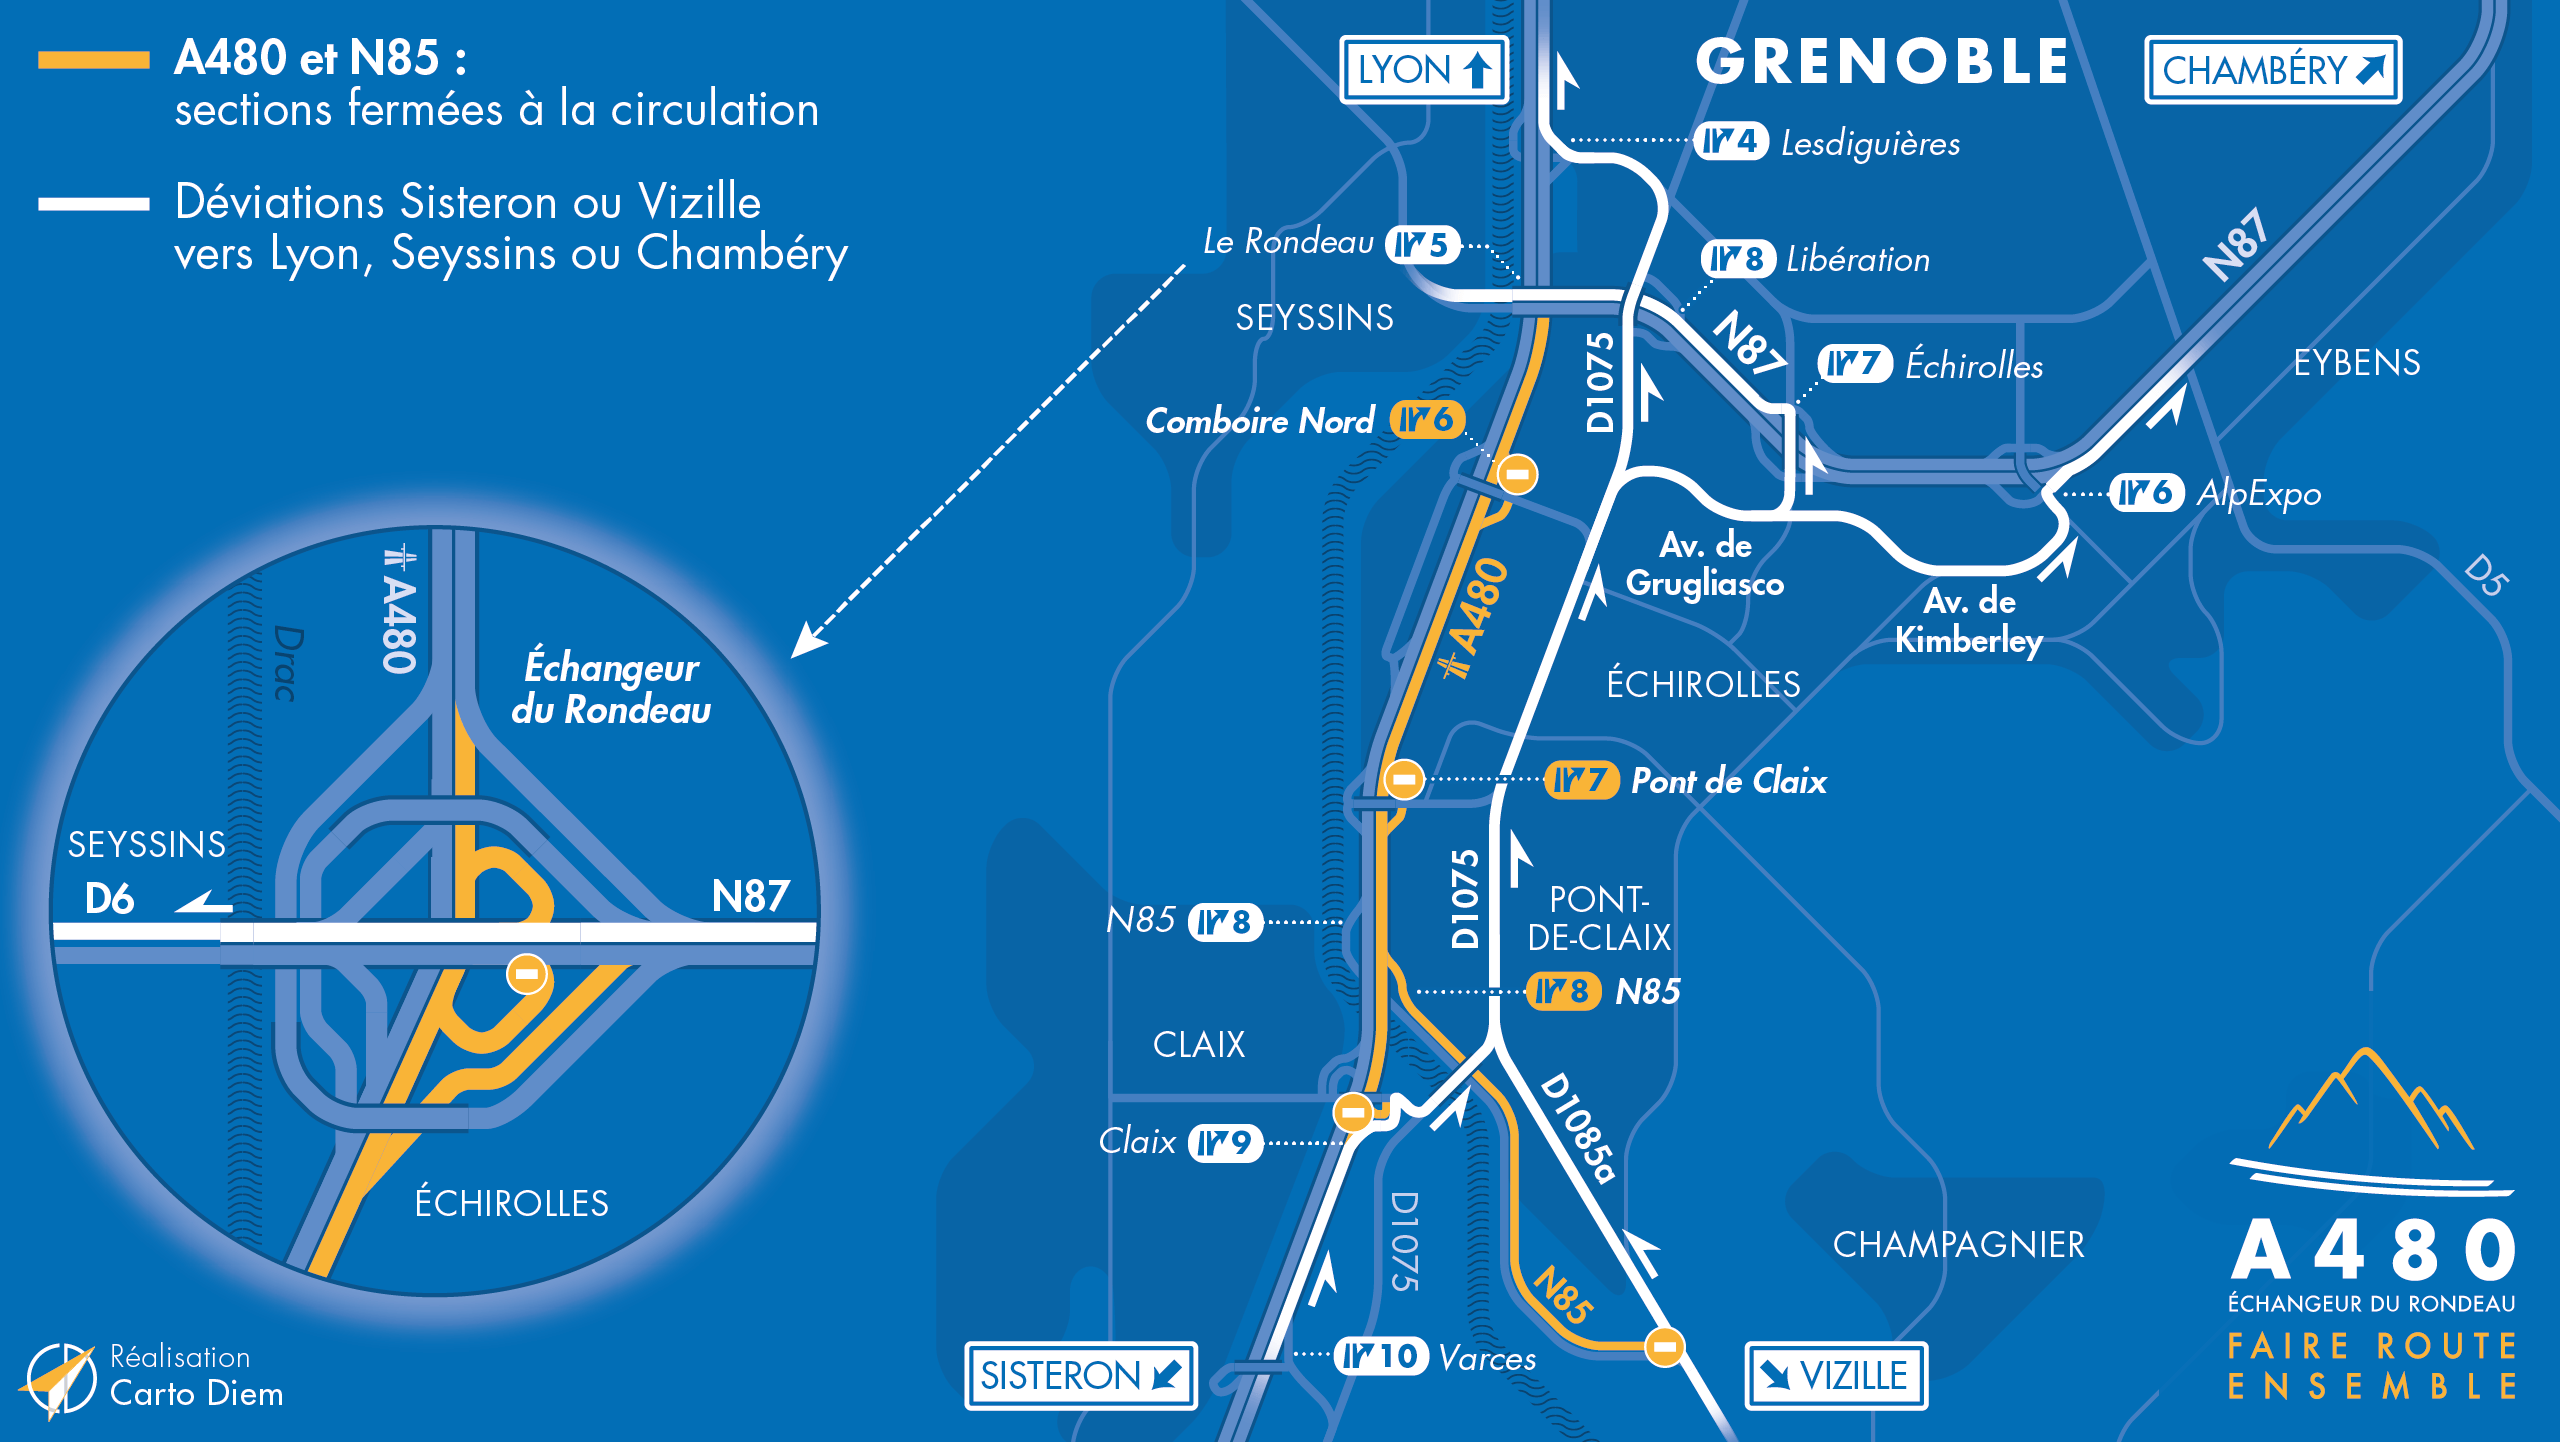 Carte de déviation suite à la fermeture de l'autoroute A480 et la nationale N85 entre Claix et le Rondeau en direction de Lyon